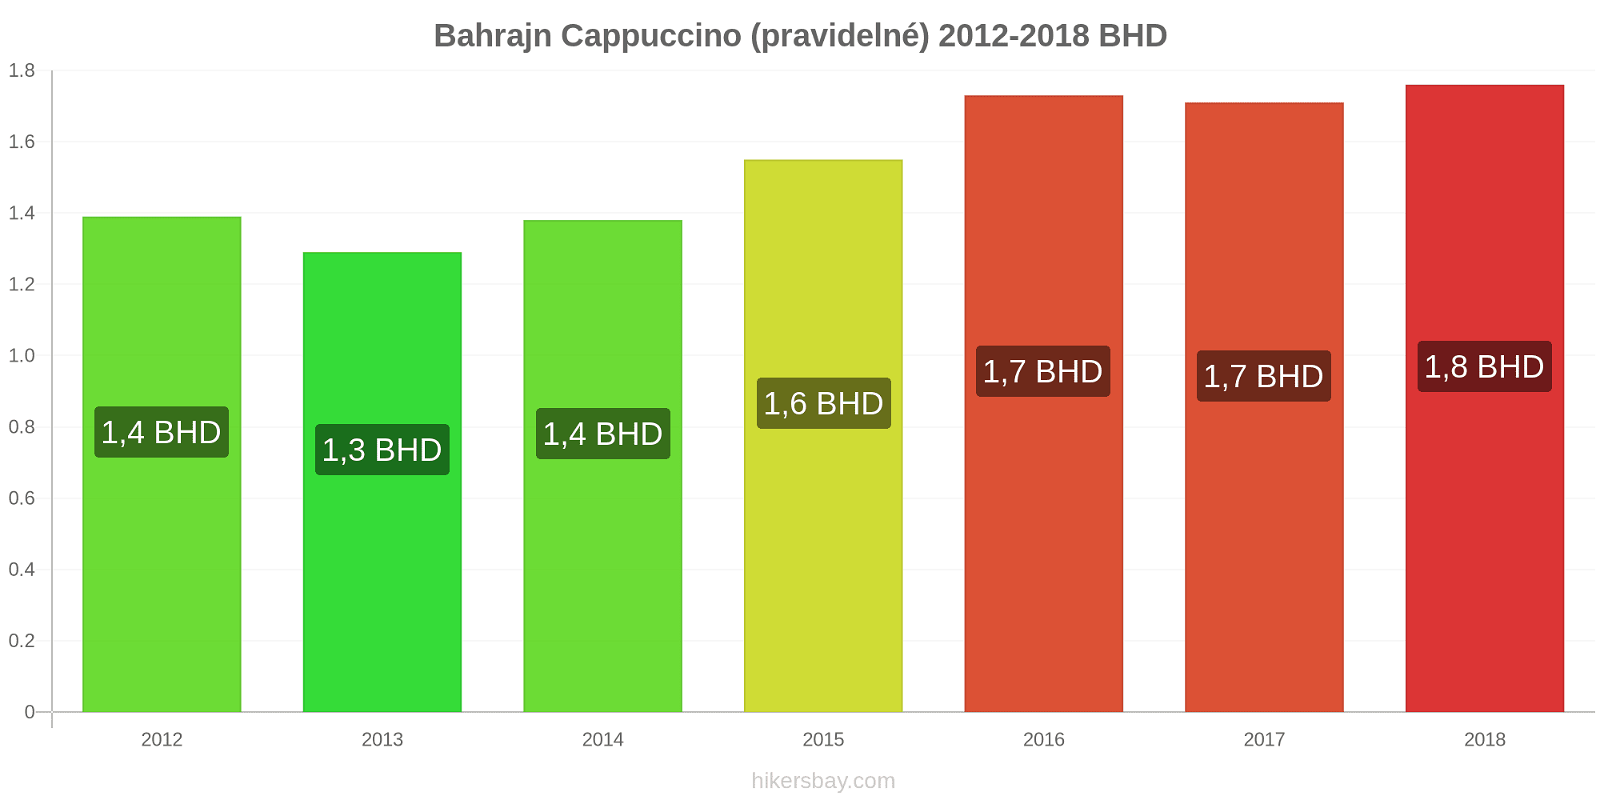 Bahrajn změny cen Cappuccino hikersbay.com